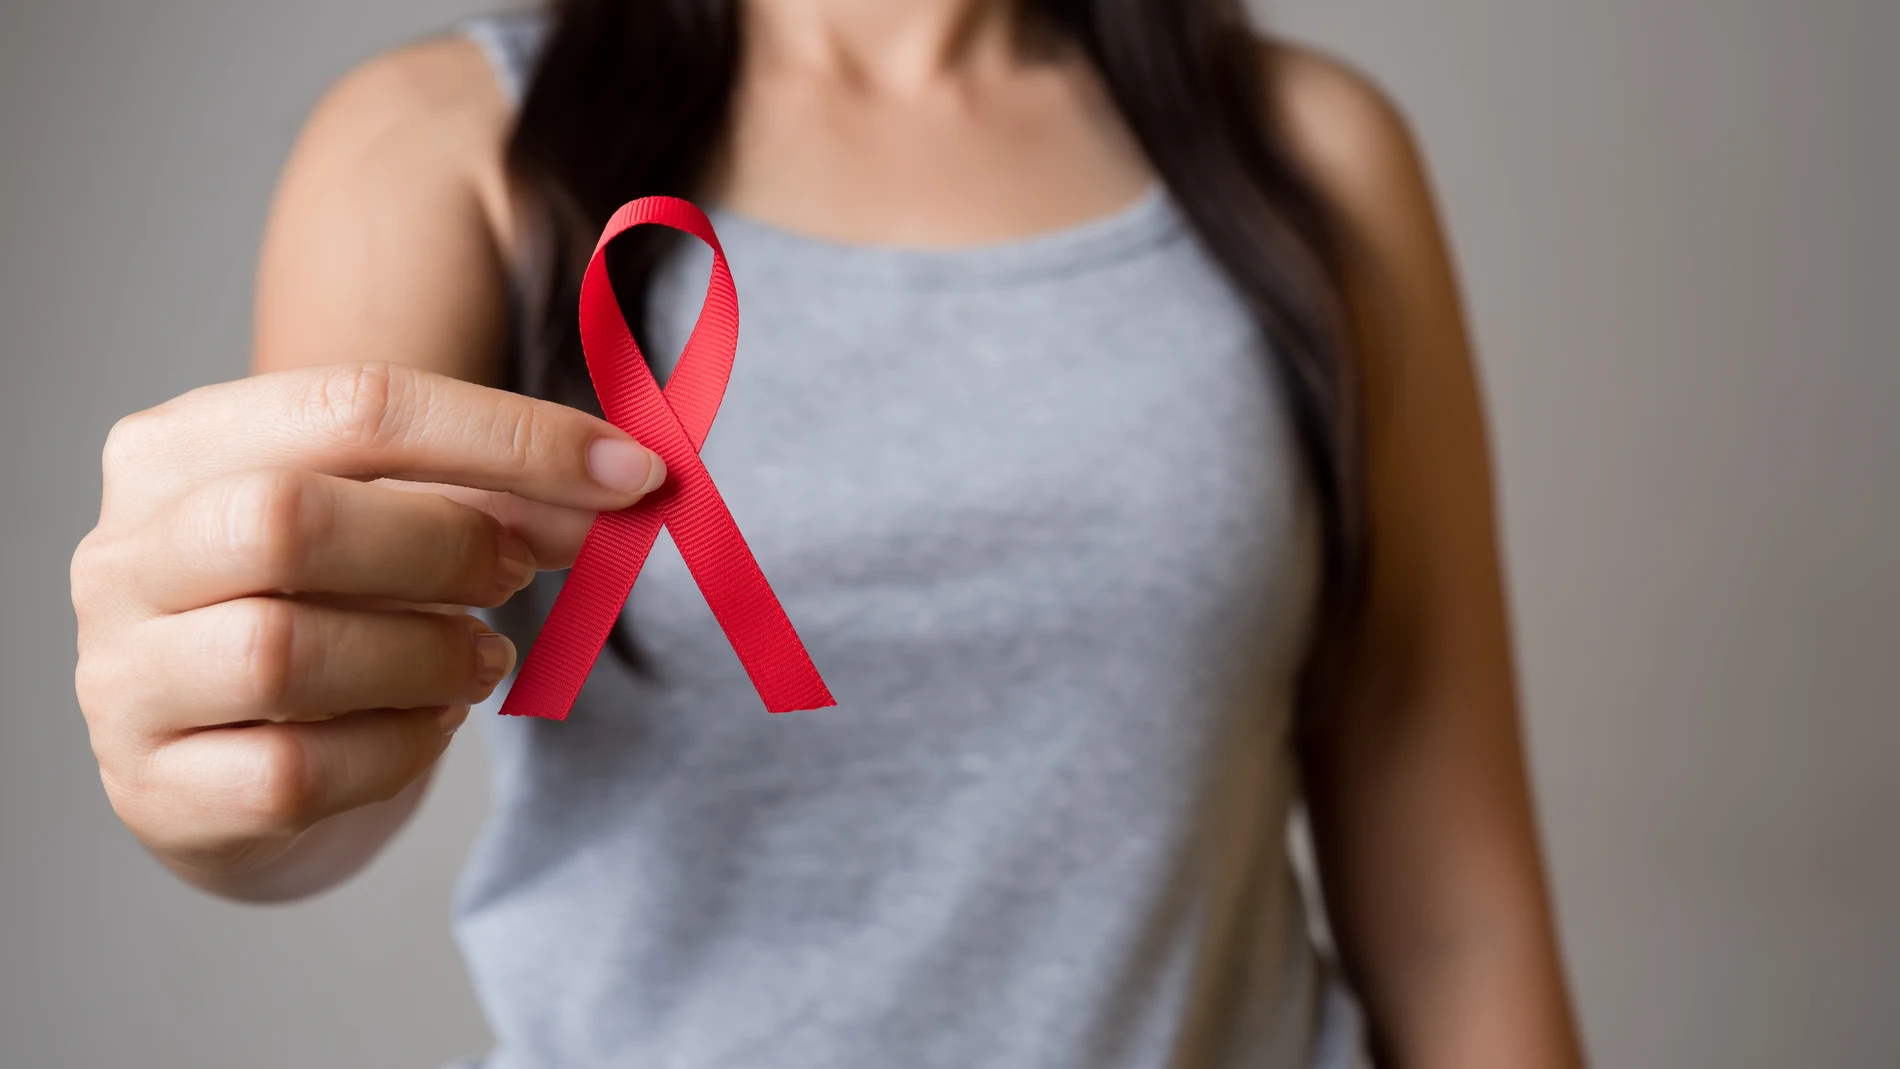 La salud en mujeres con VIH